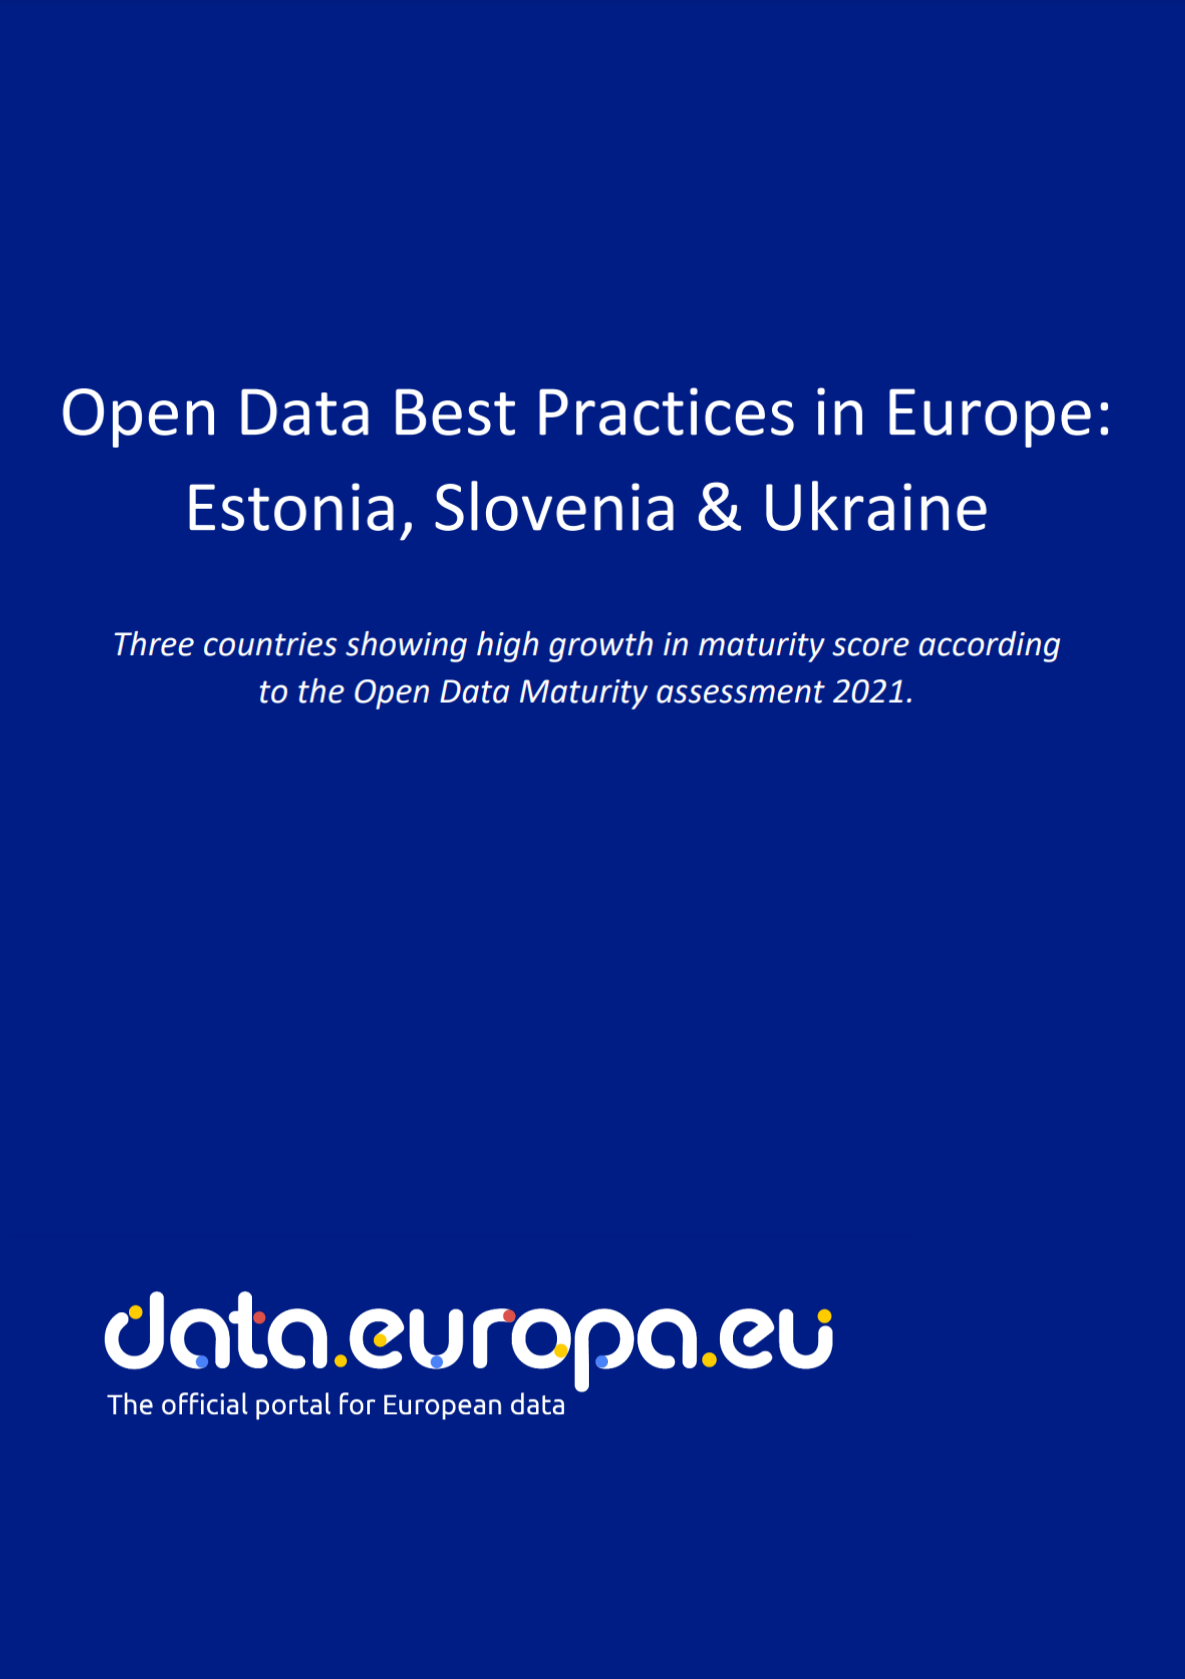 Open data best practices in Europe: Estonia, Slovenia and Ukraine